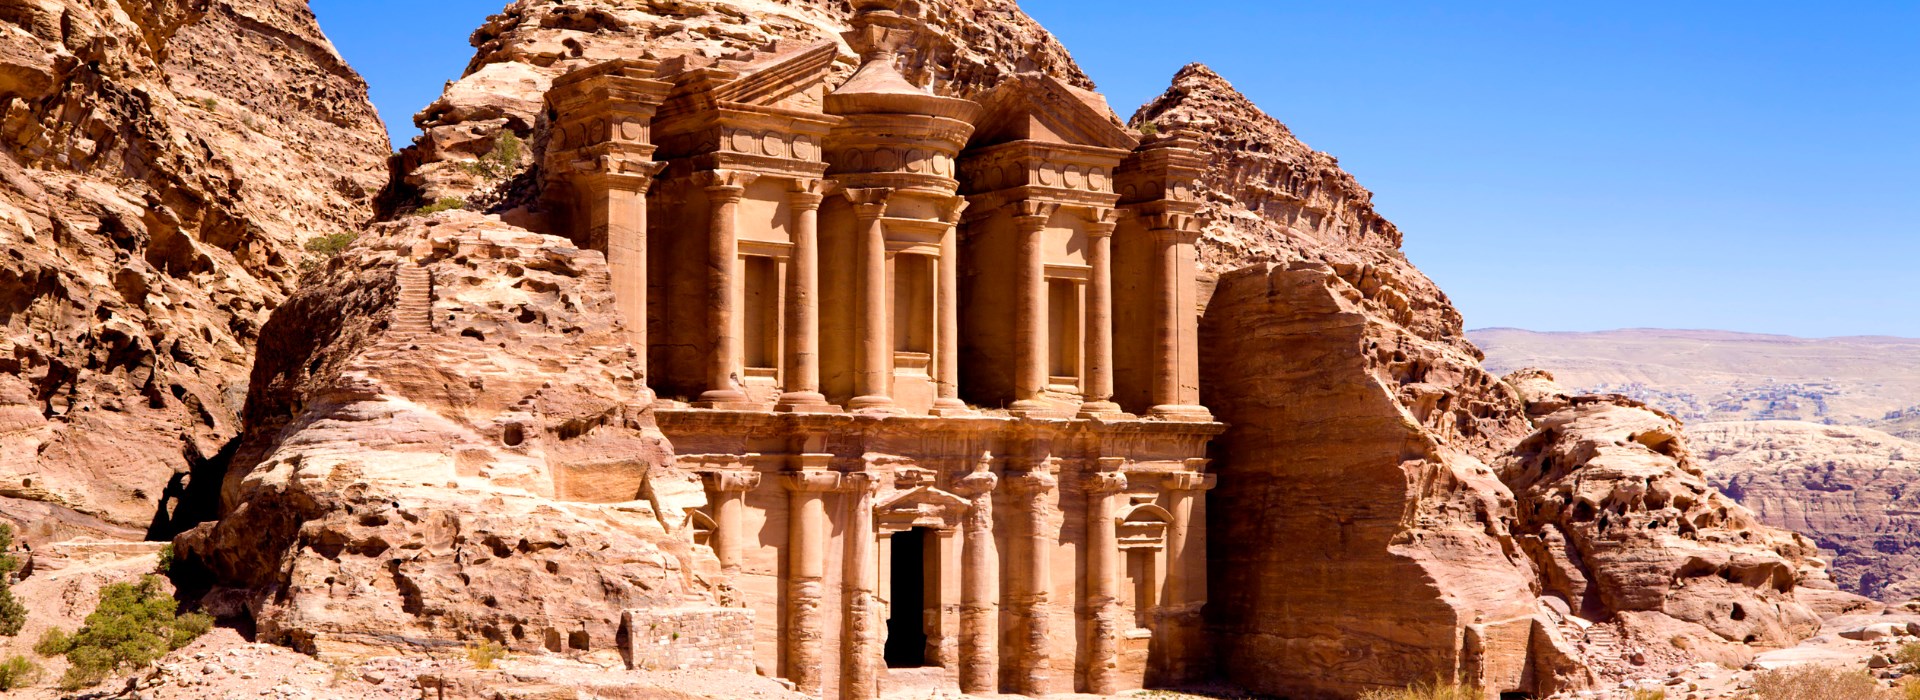 Visiter la Jordanie en voyage en petit groupe : Une aventure inoubliable